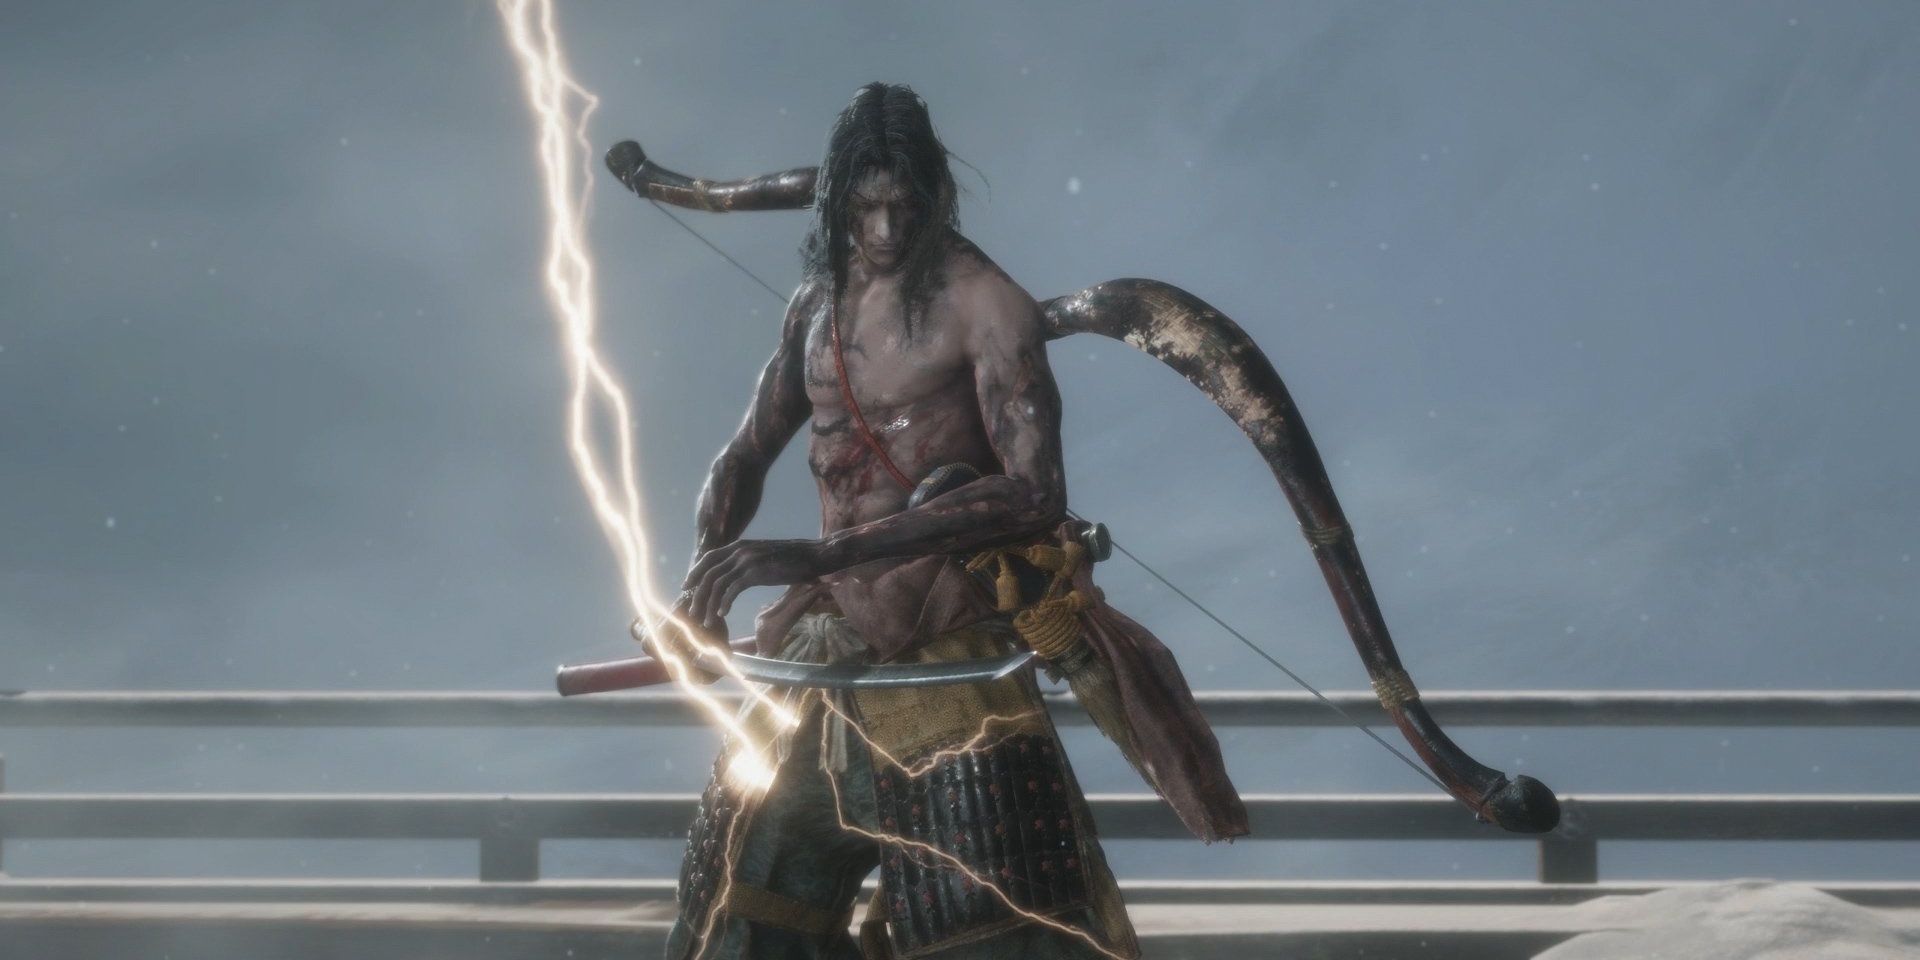 Genichiro in Sekiro with his shirt removed and lighting striking his sword